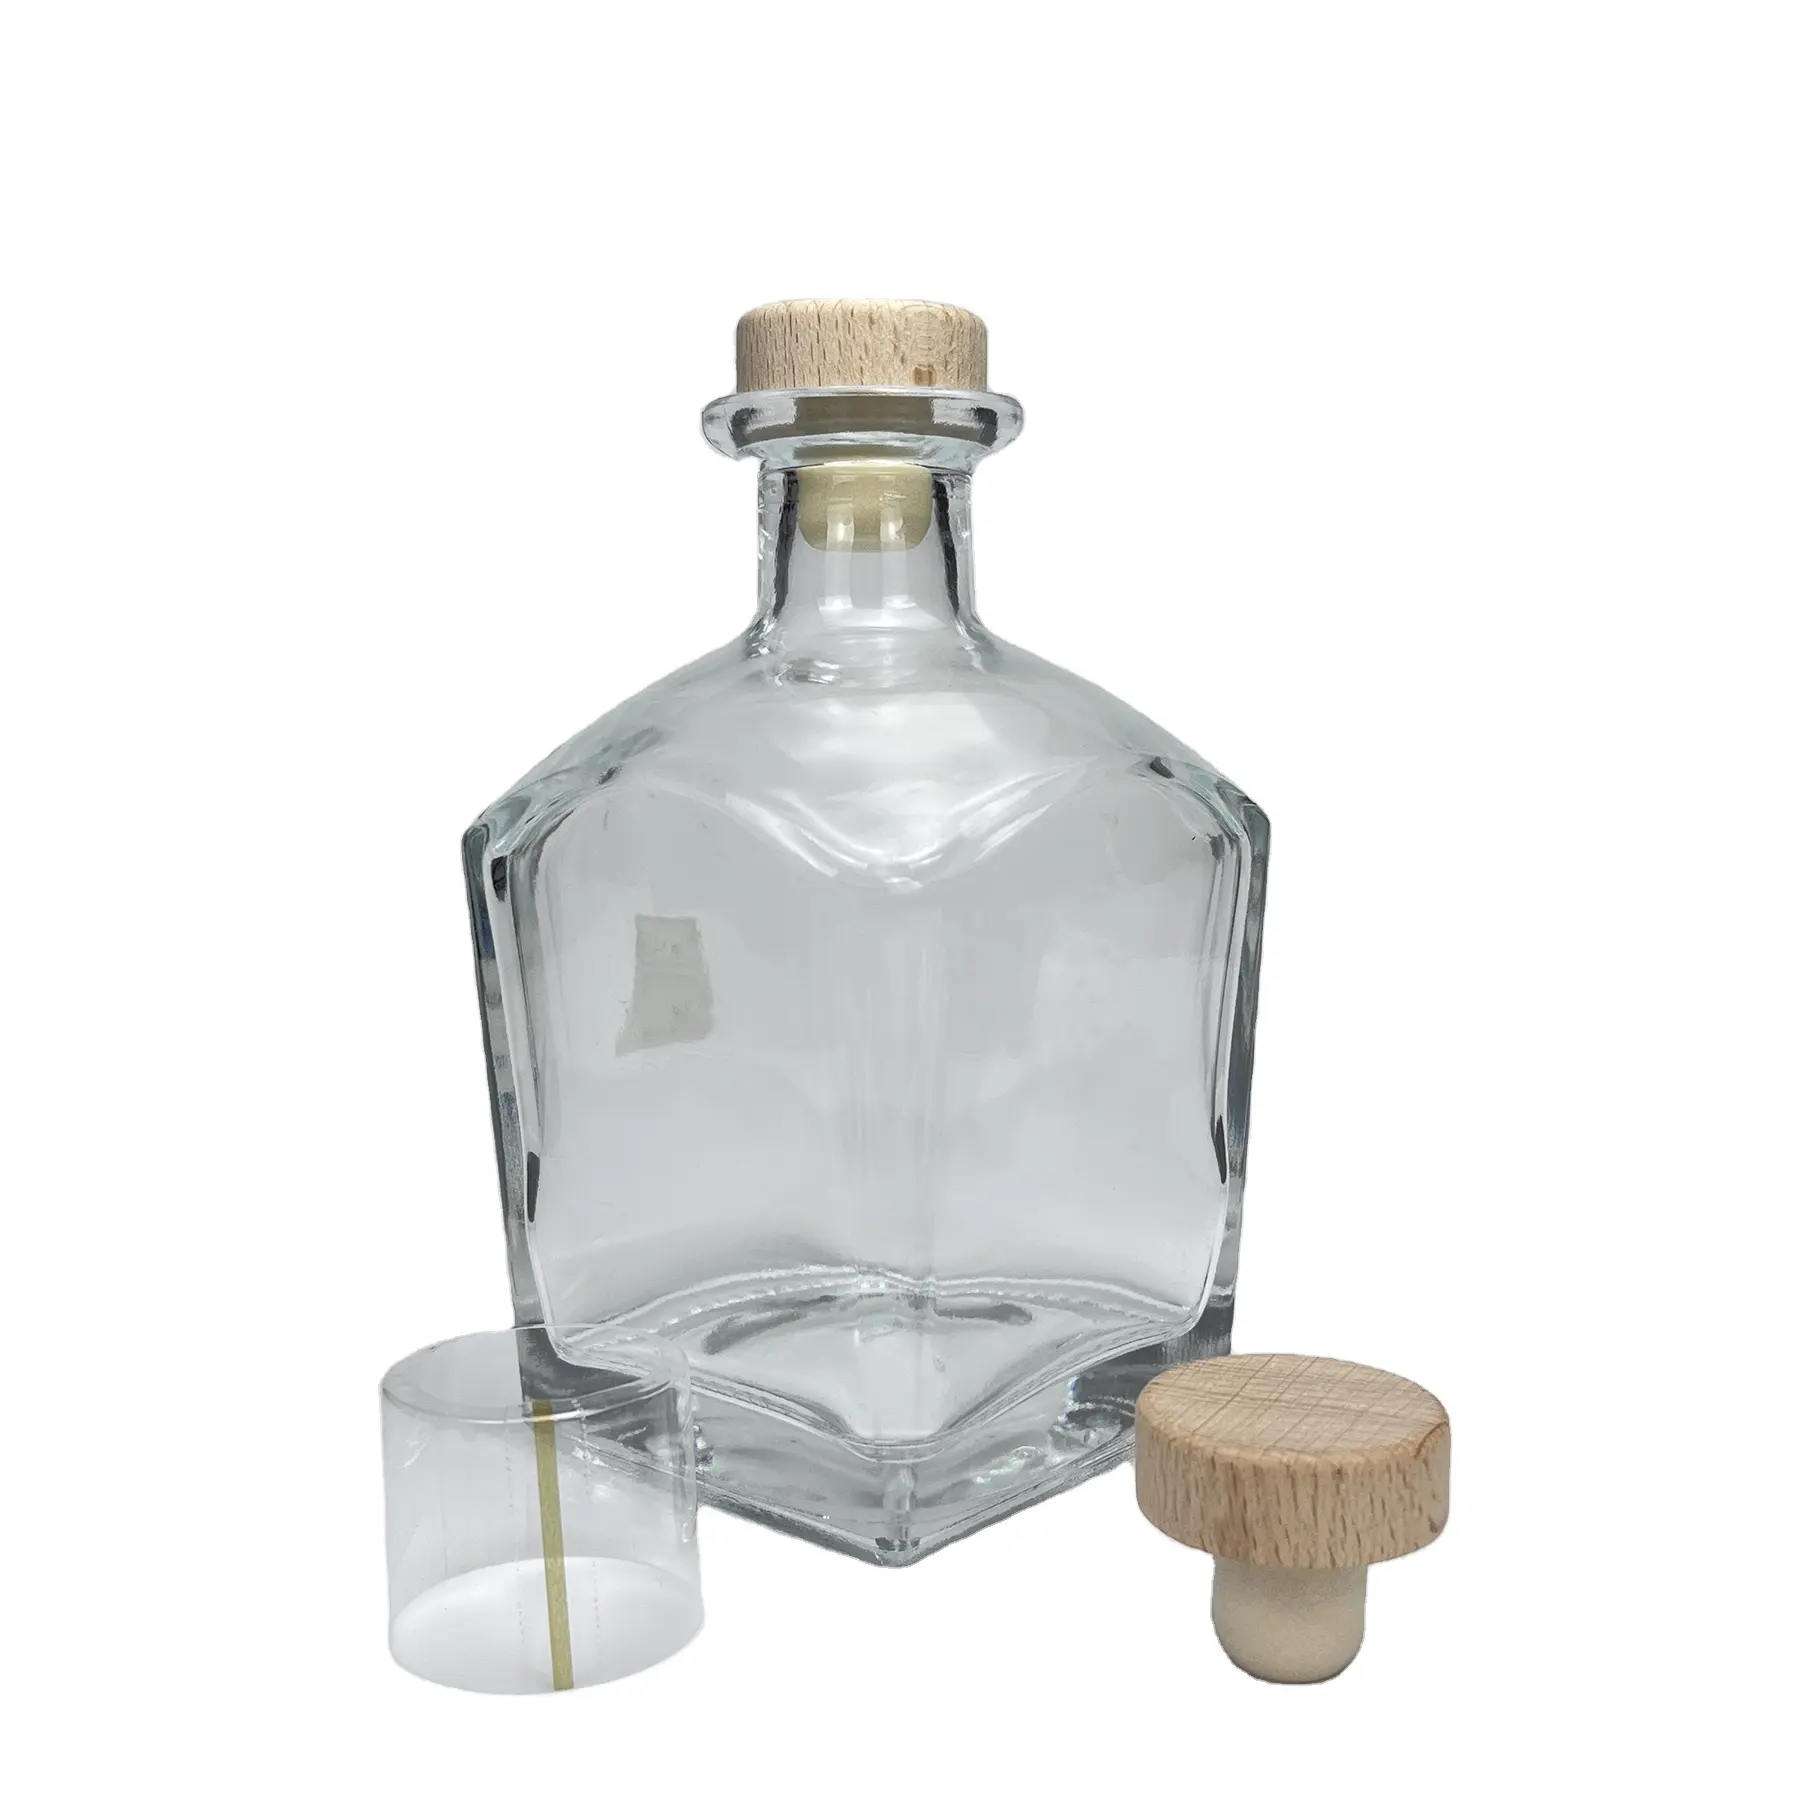 Holesale-botella de vodka transparente, botella de cristal para vino de 750ml, precio más bajo